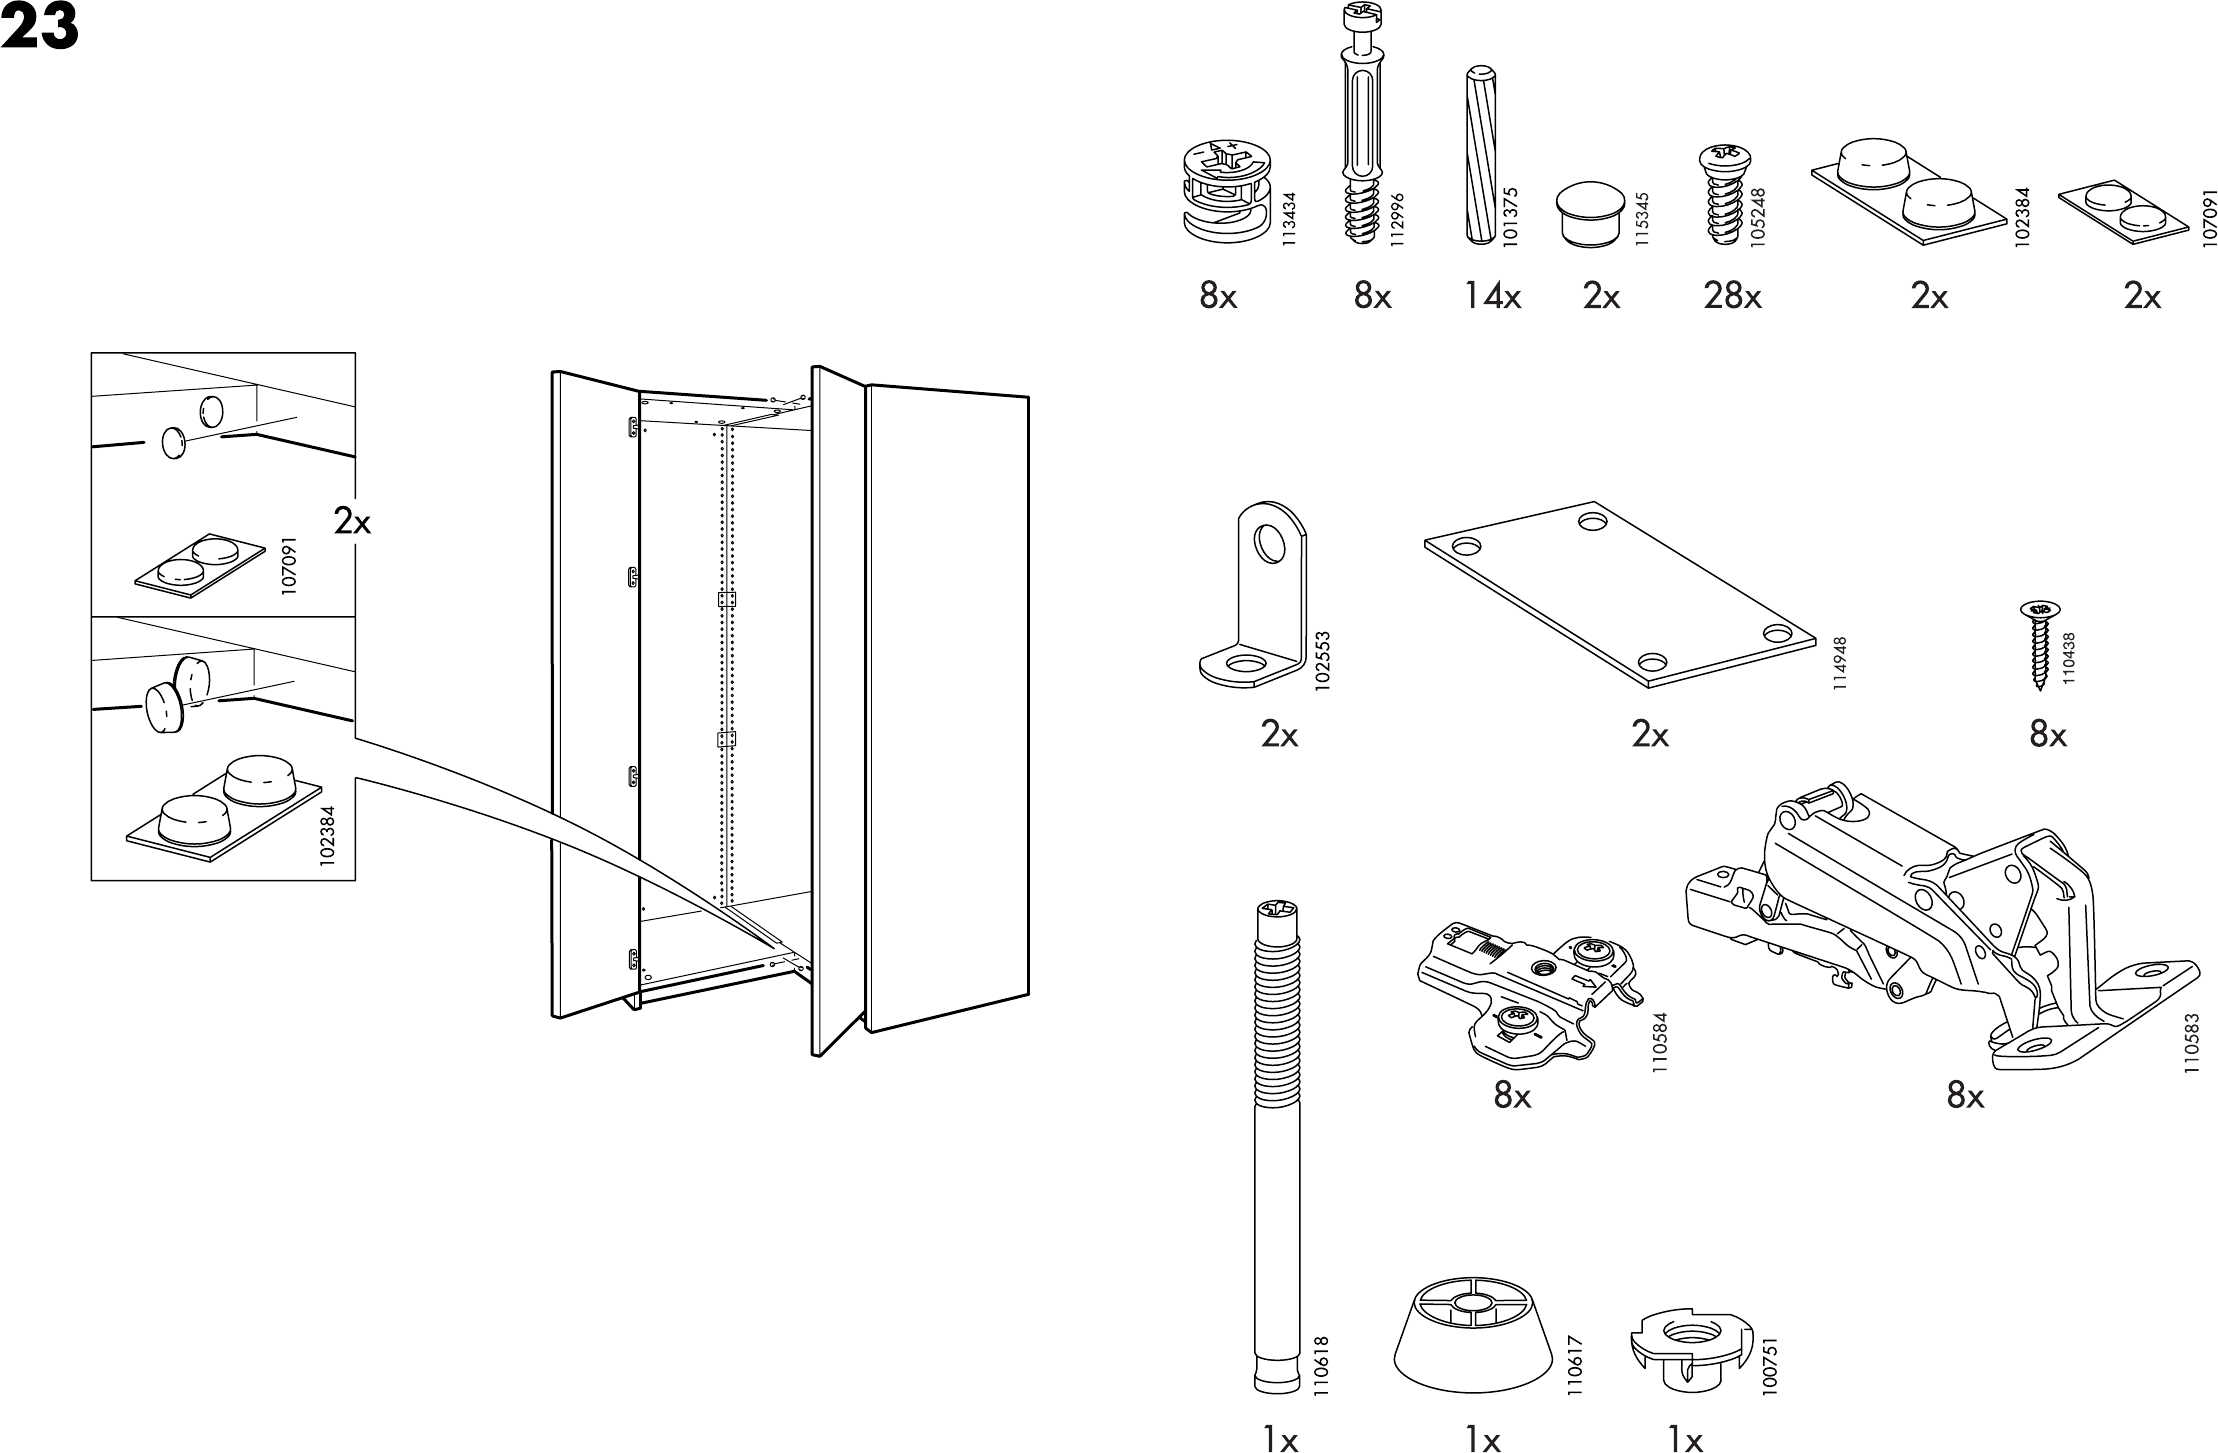 Ikea Шкаф Купе Инструкция